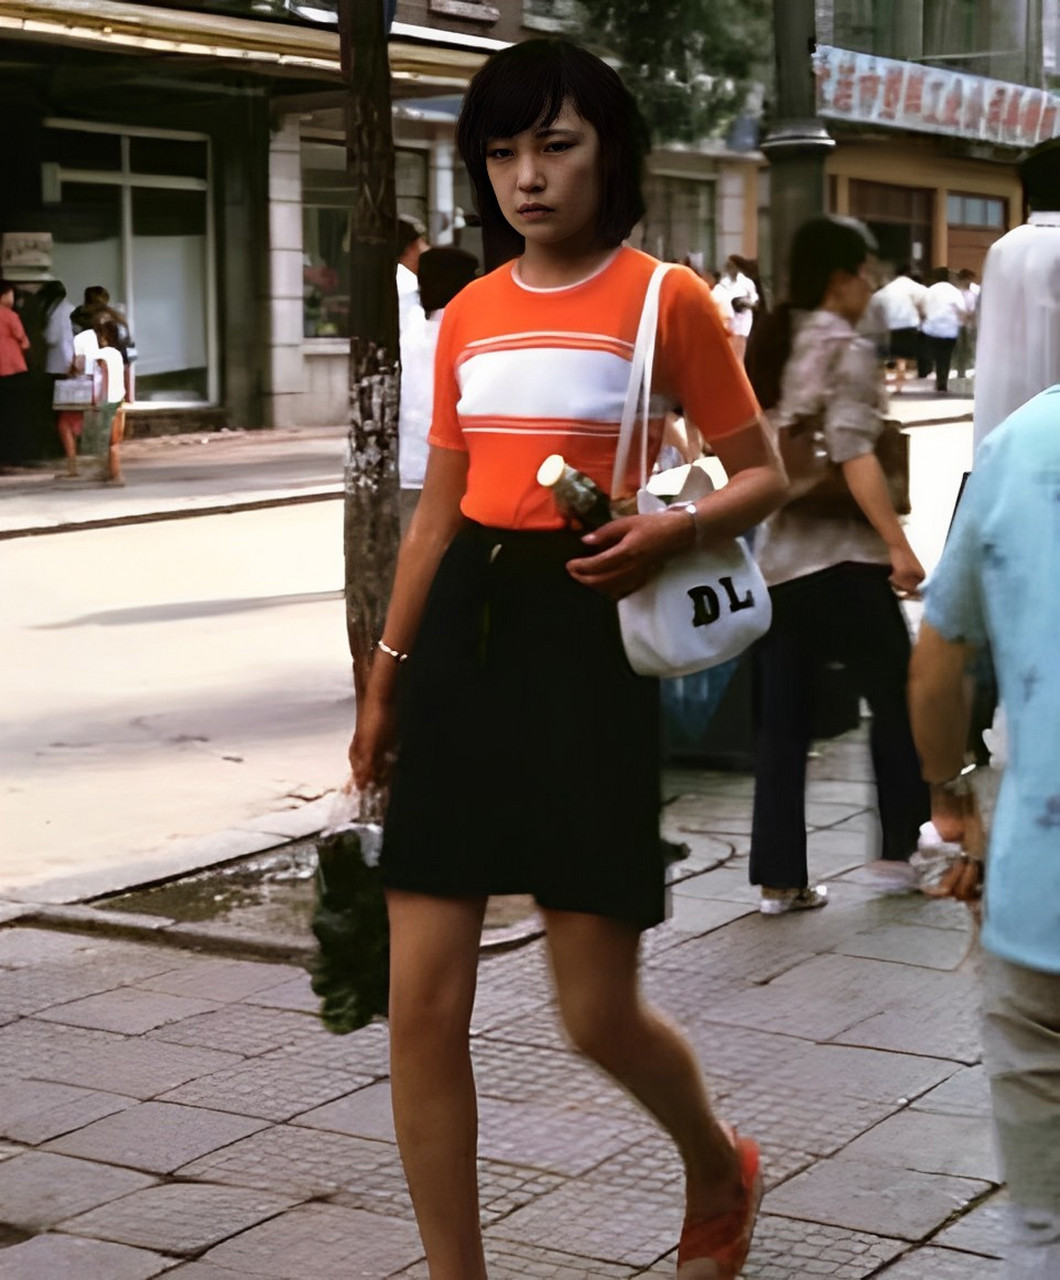 20世纪80年代服装图片